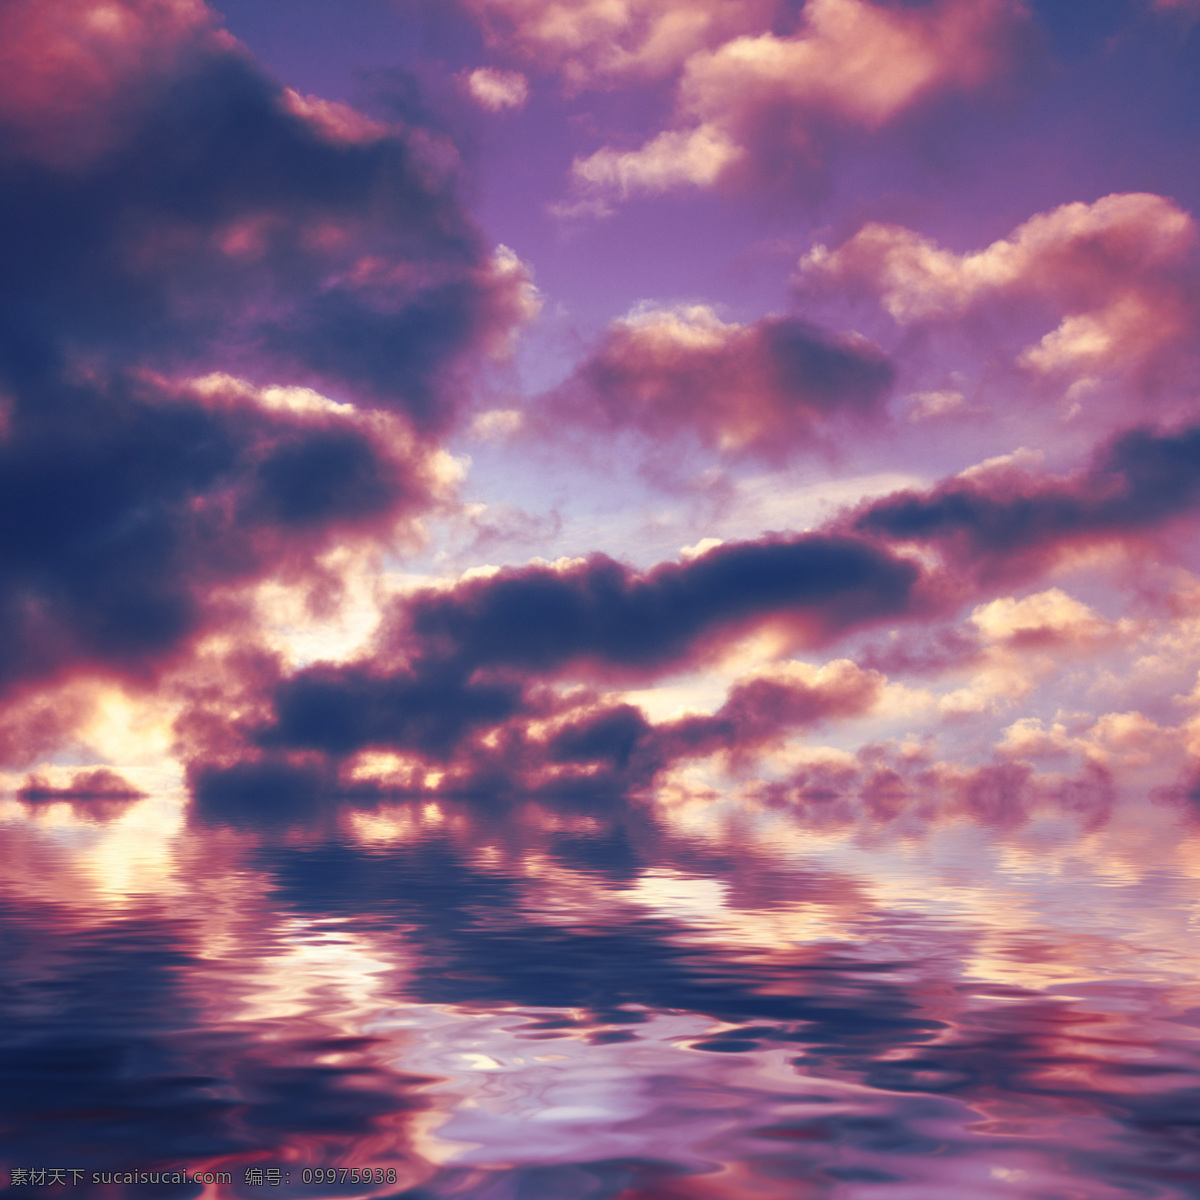 黄昏 云朵 水面 倒影 白云 波浪 水纹 天空图片 风景图片